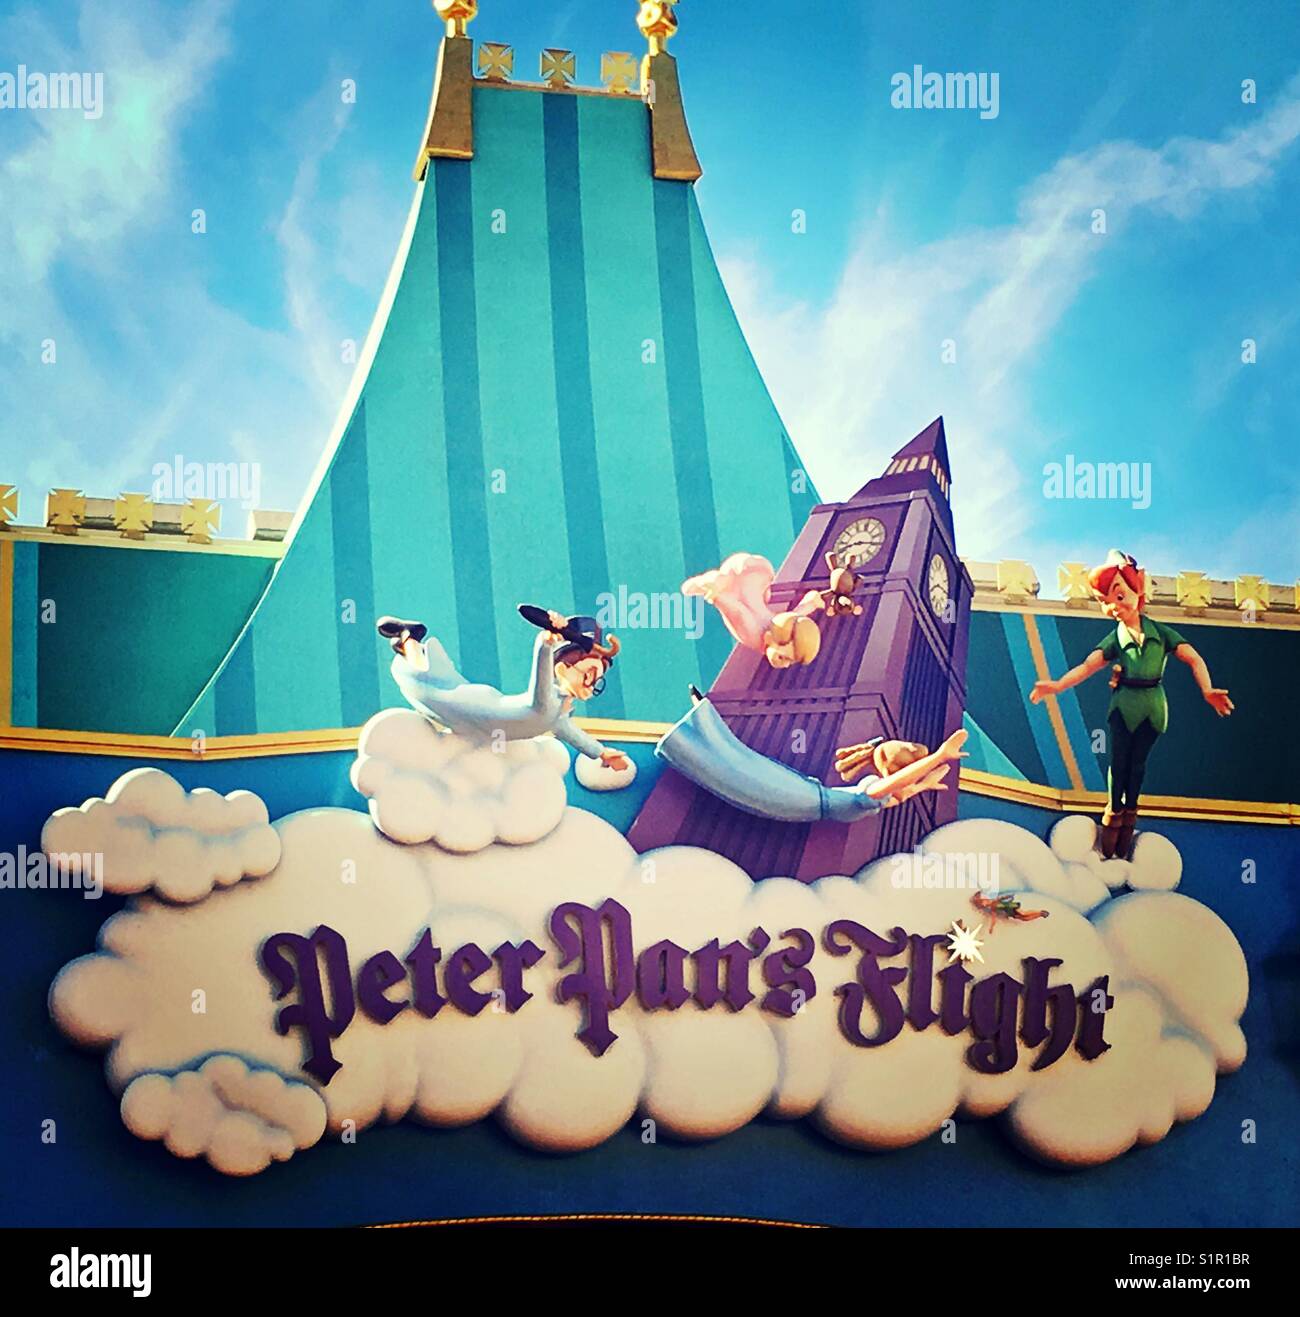 Peter Pan S Flight Stock Photo Alamy